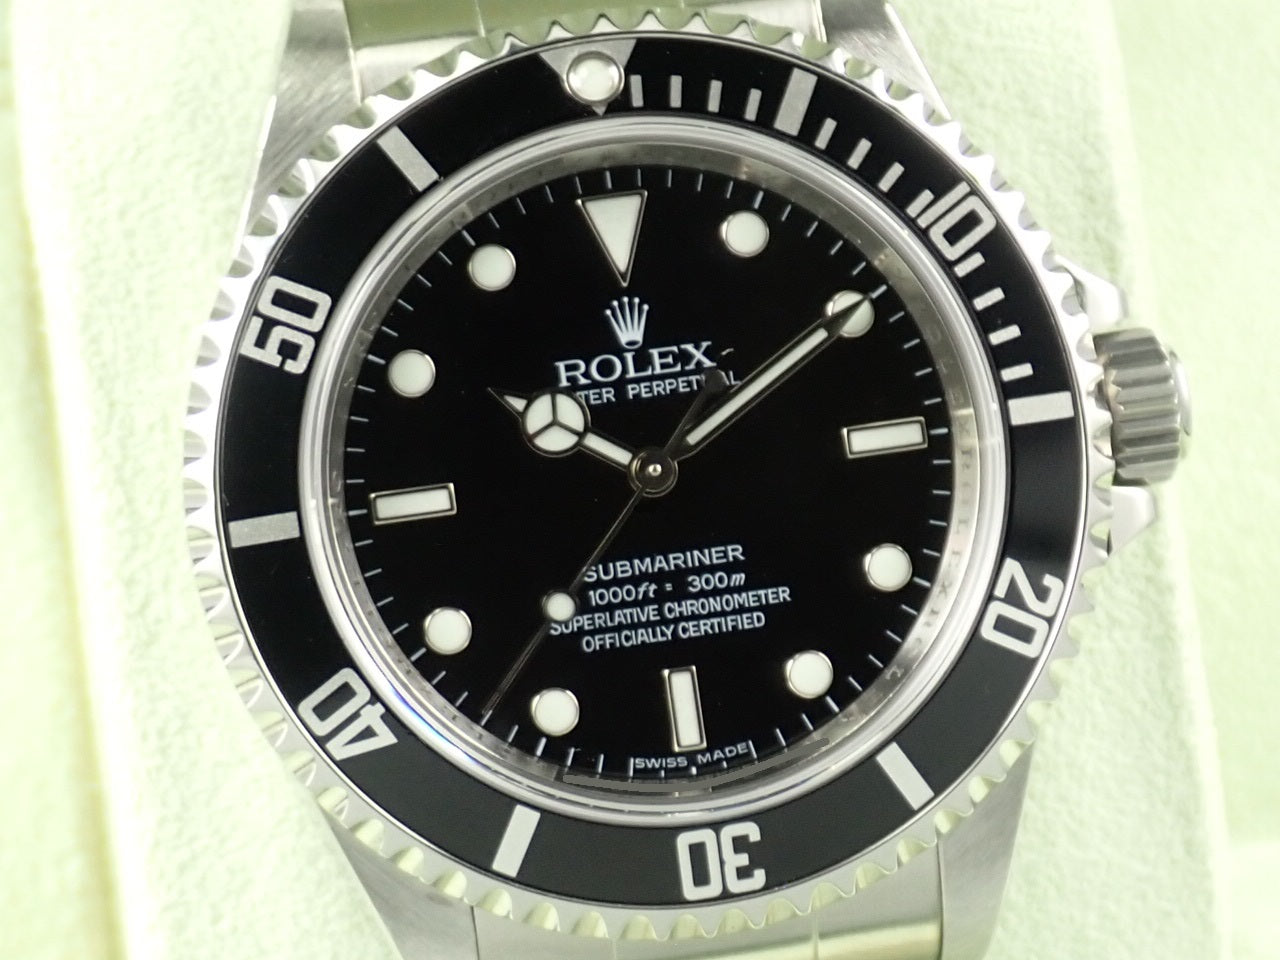 Rolex Submariner No Date Random &lt;Warranty, Box, etc.&gt;